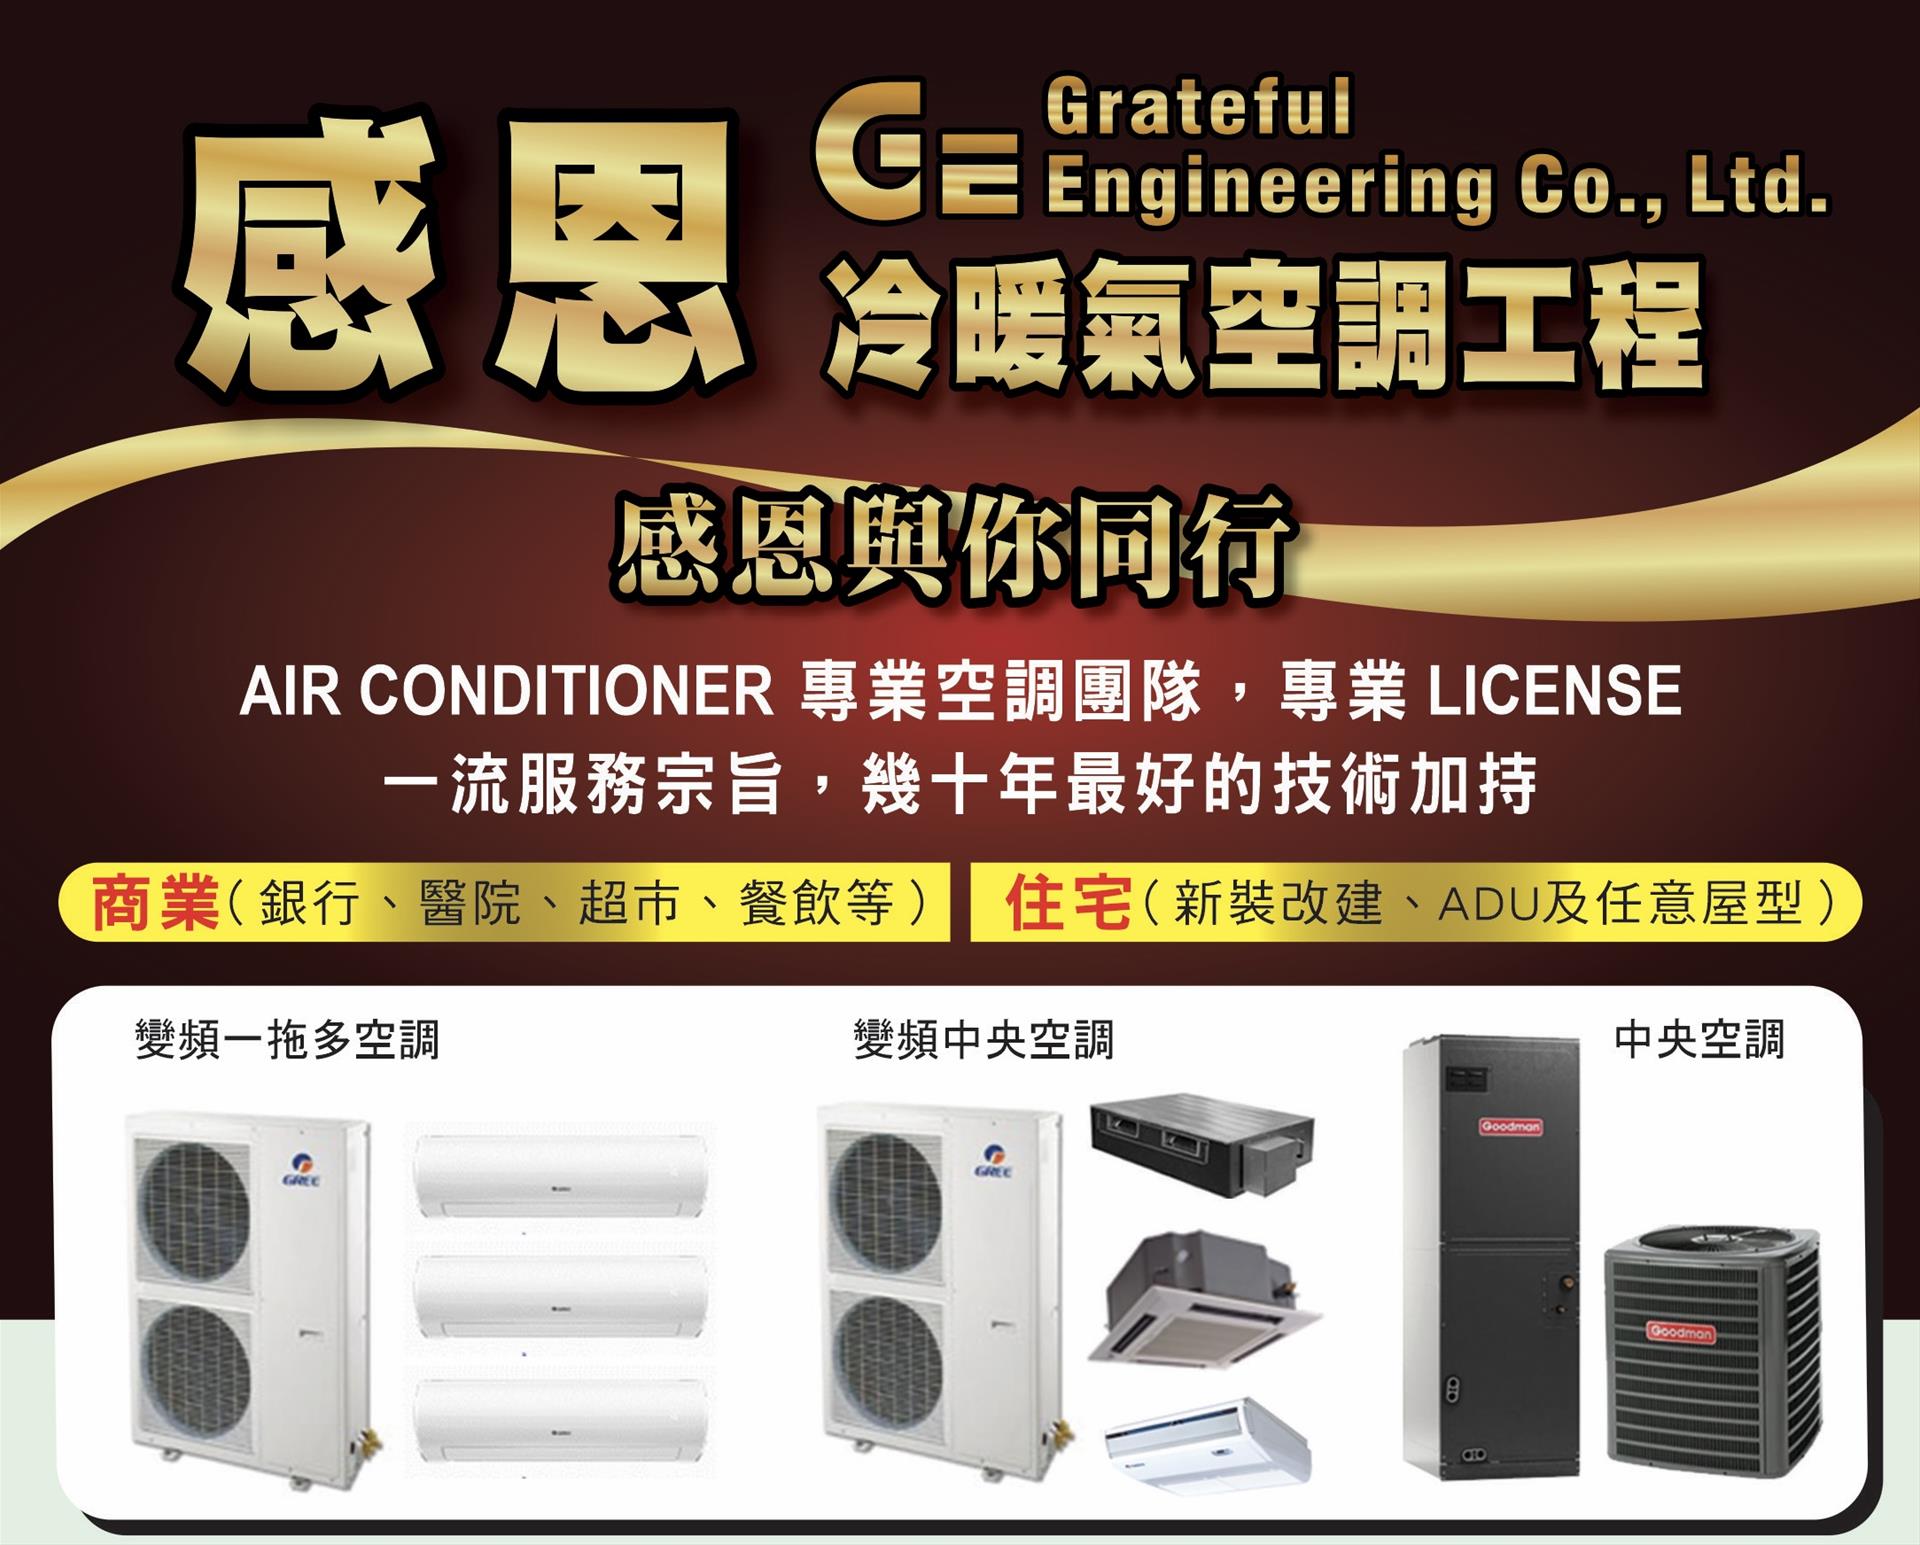 【居家】感恩冷暖氣空調工程公司，感恩與您同行。專業空調安裝維修，專業執照專業服務